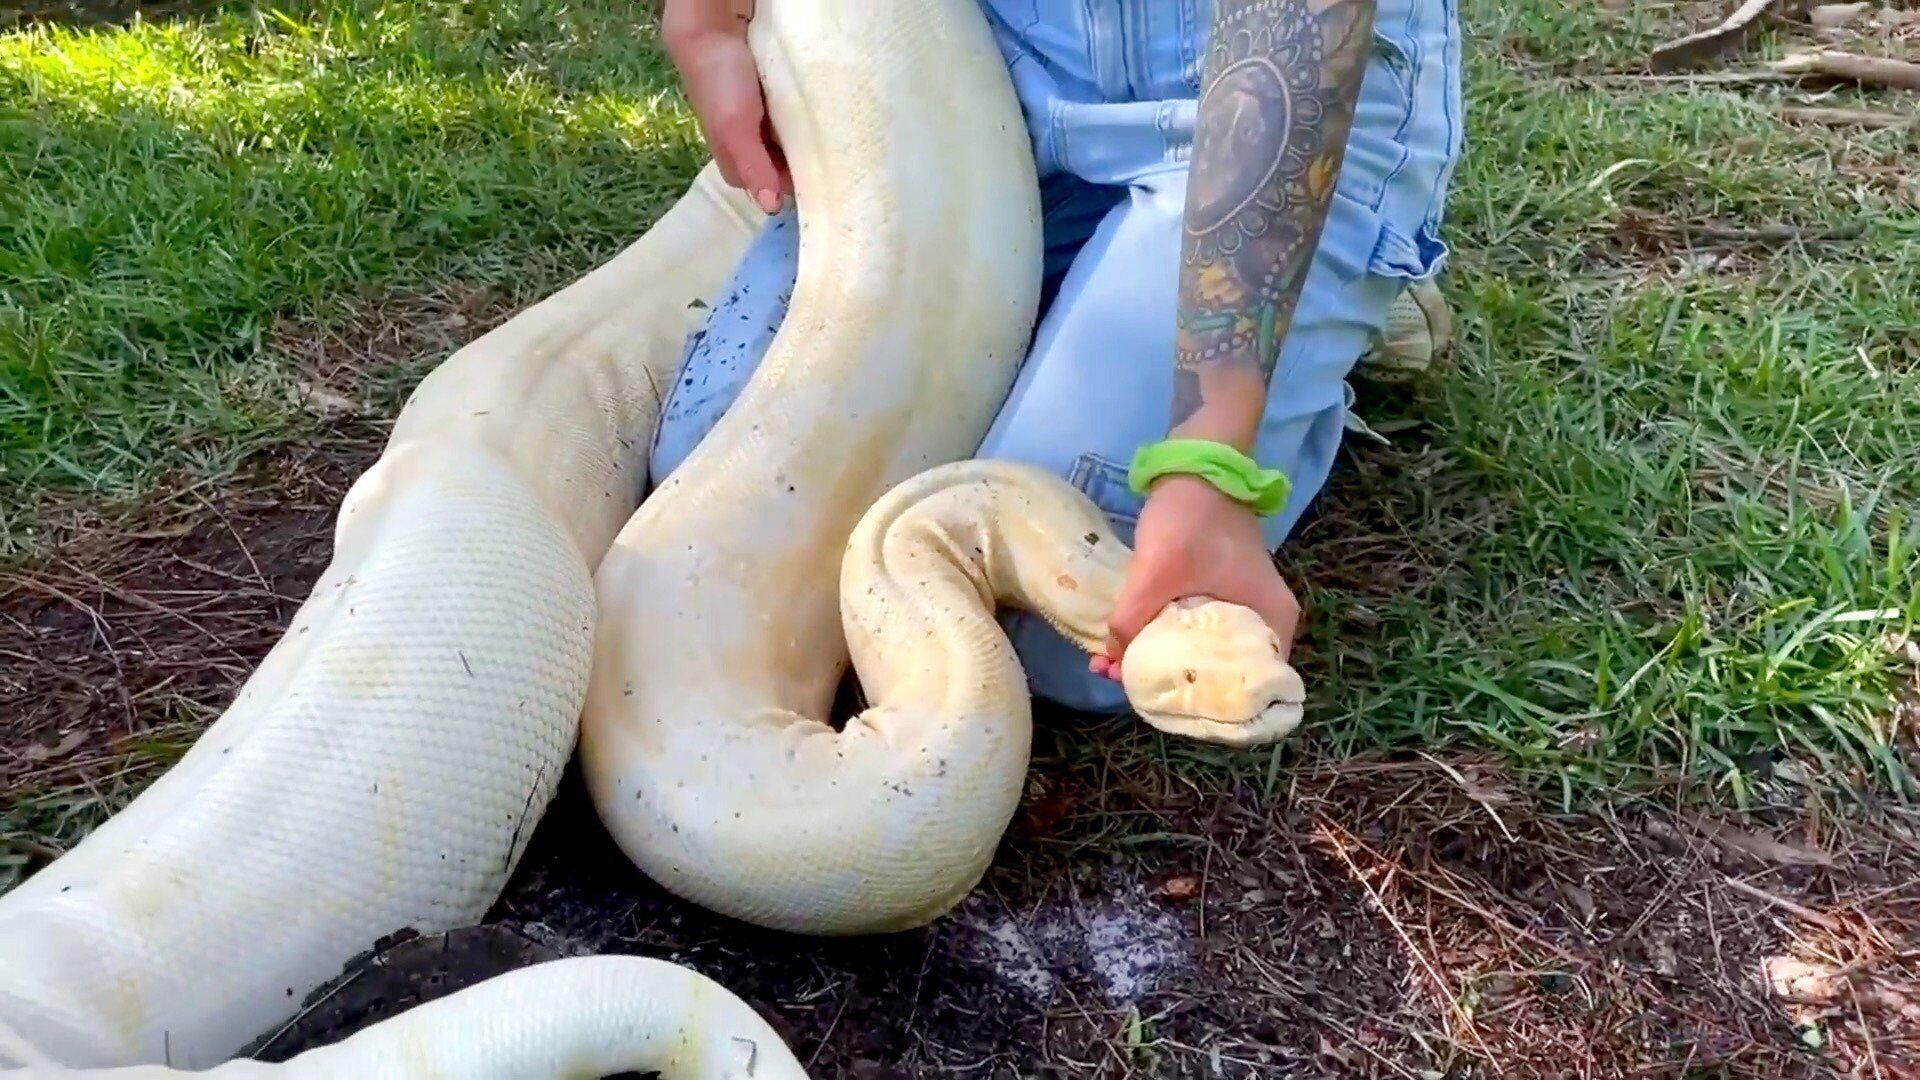 Massive, 9-foot albino boa constrictor found in Florida backyard